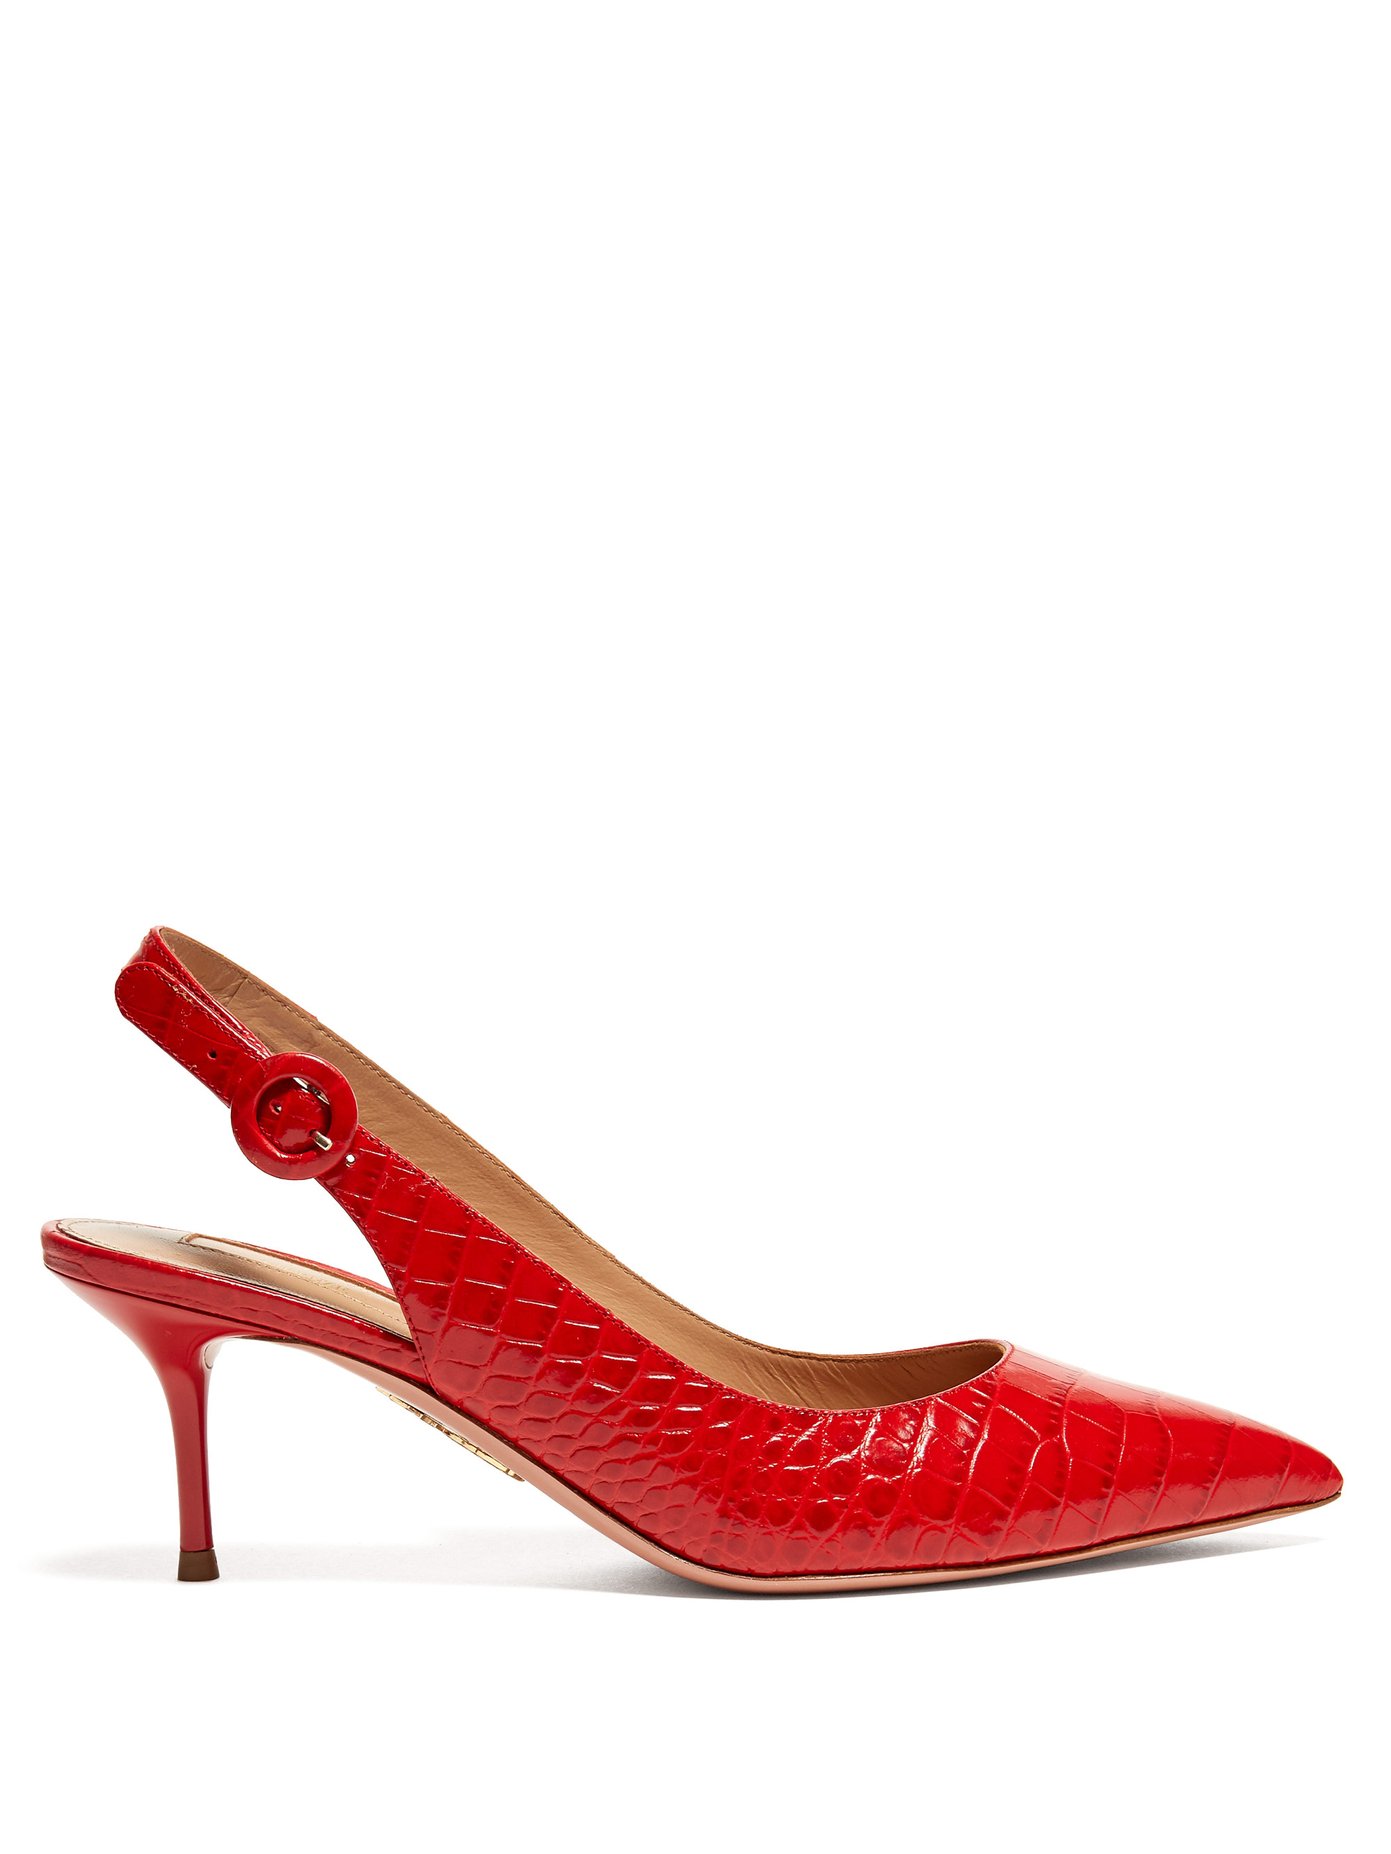 aquazzura red shoes